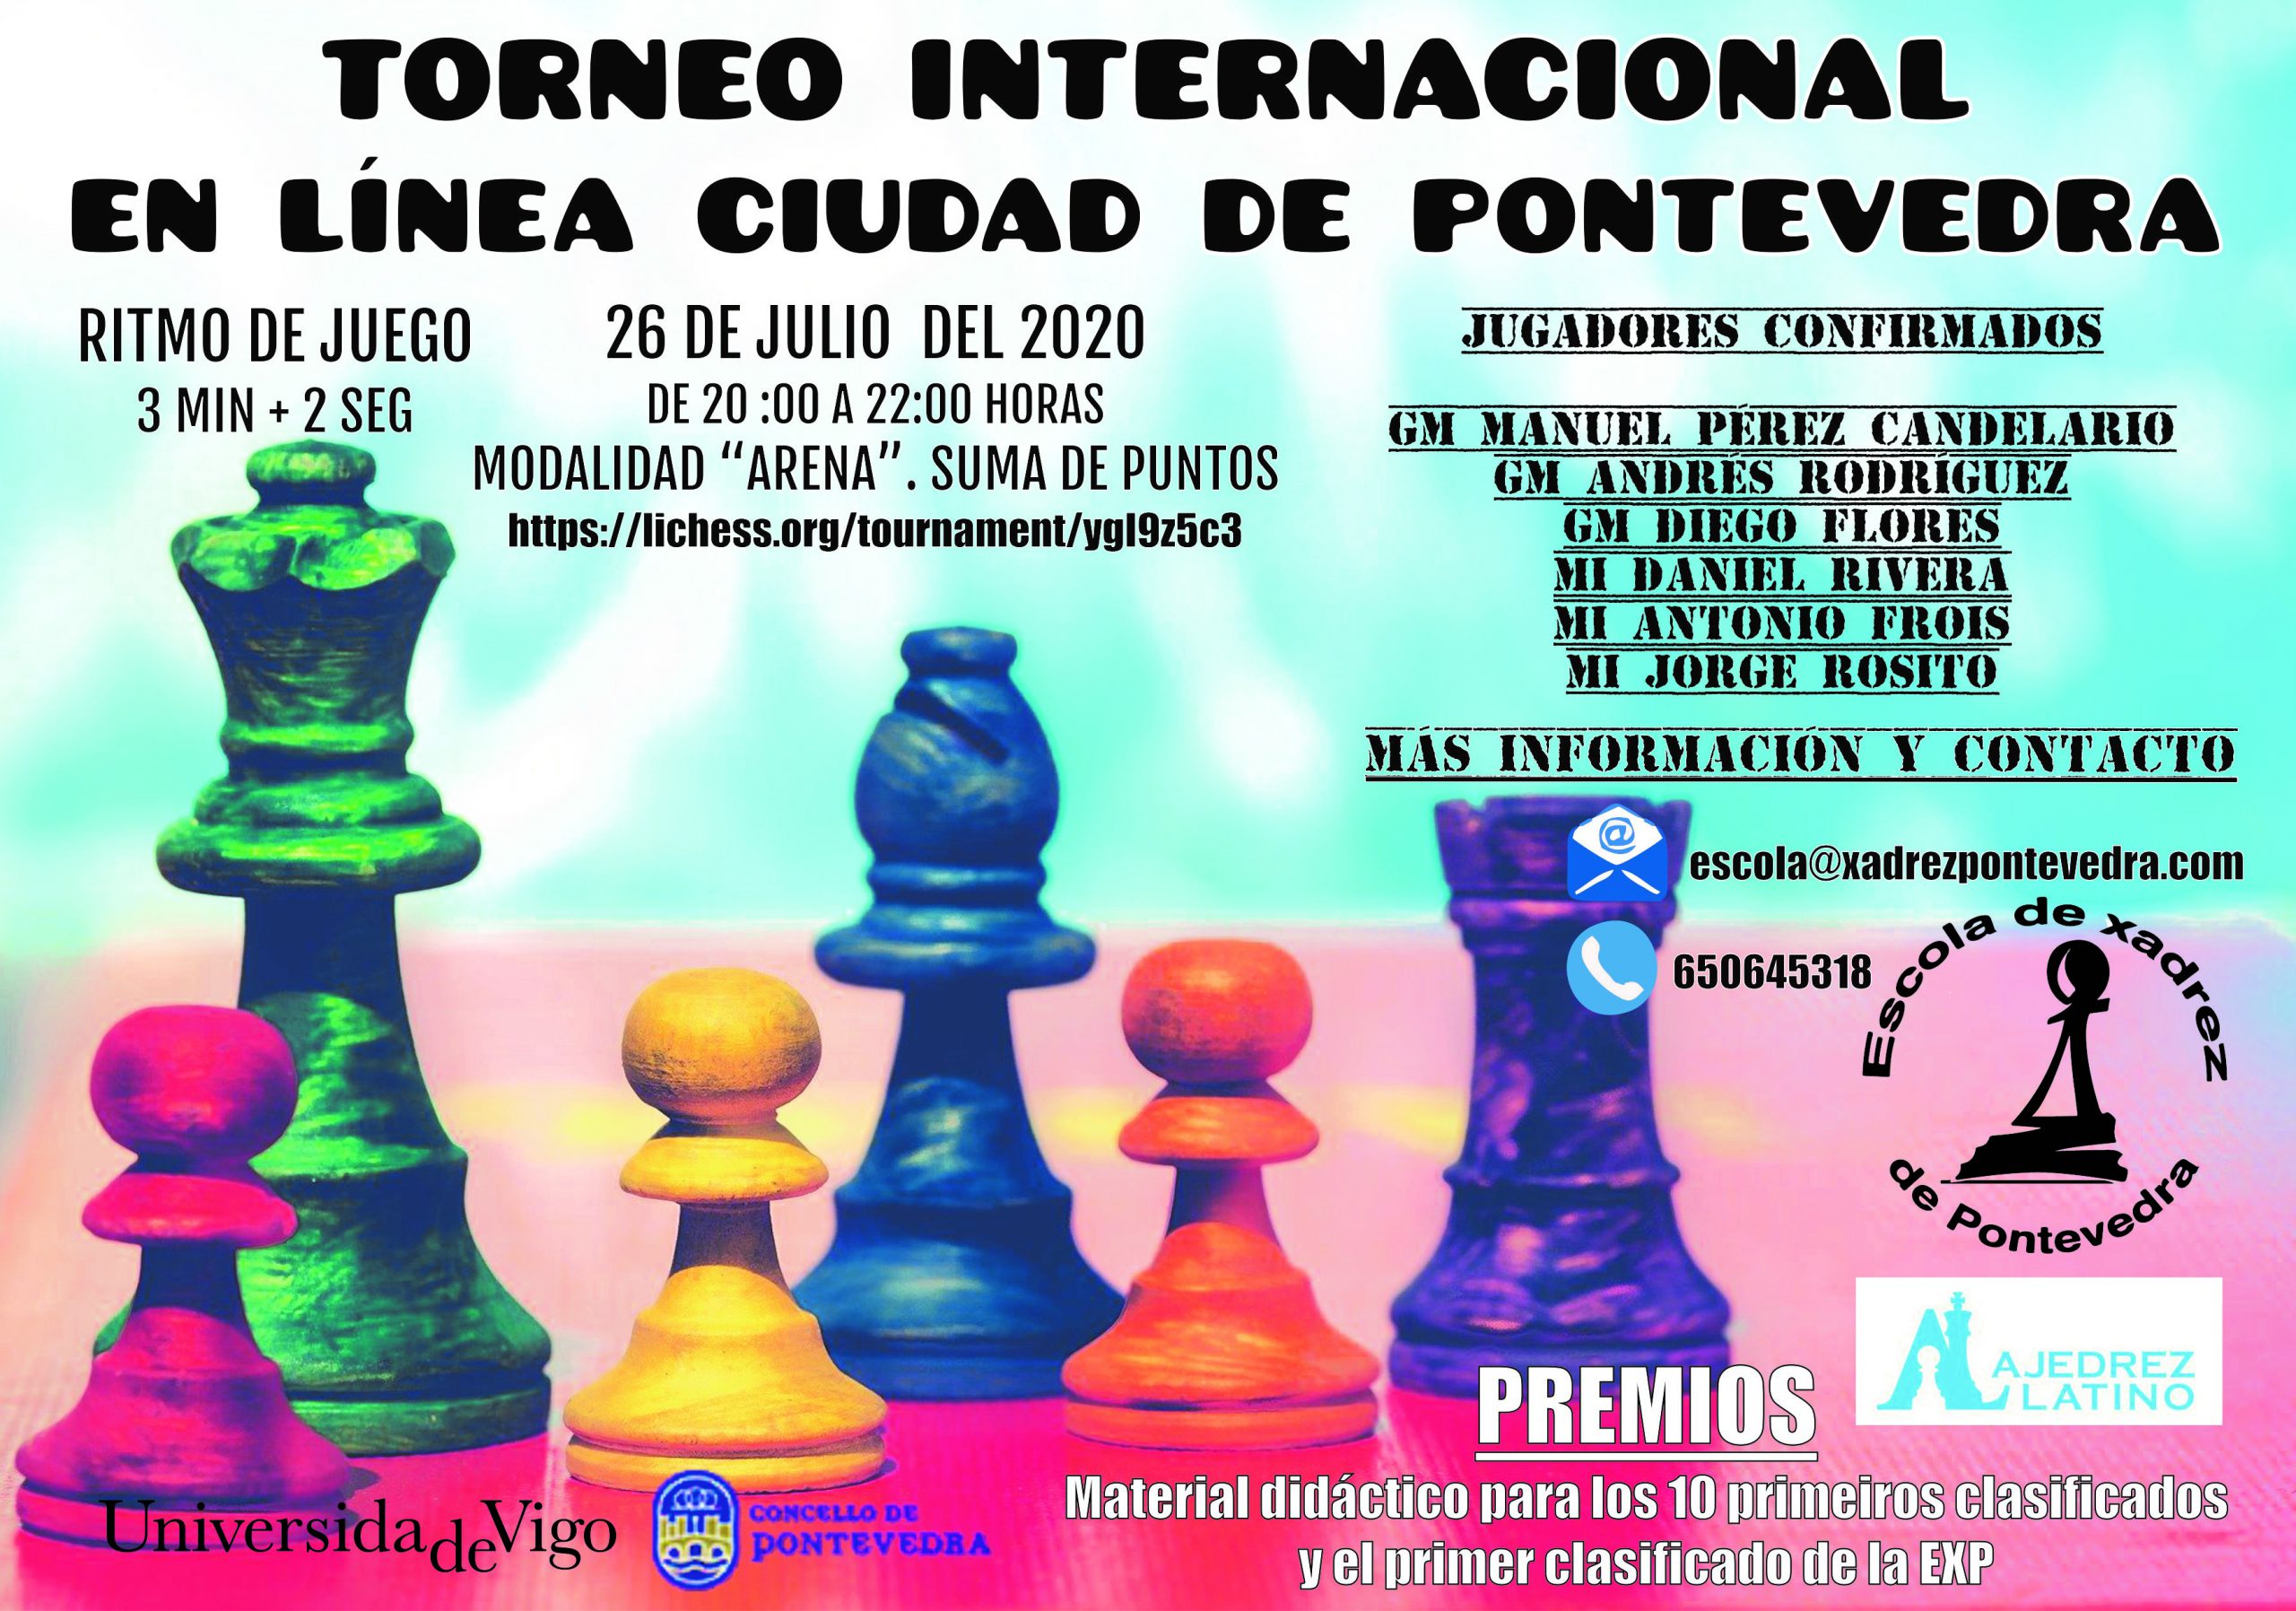 Torneo Internacional en línea Cidade de Pontevedra